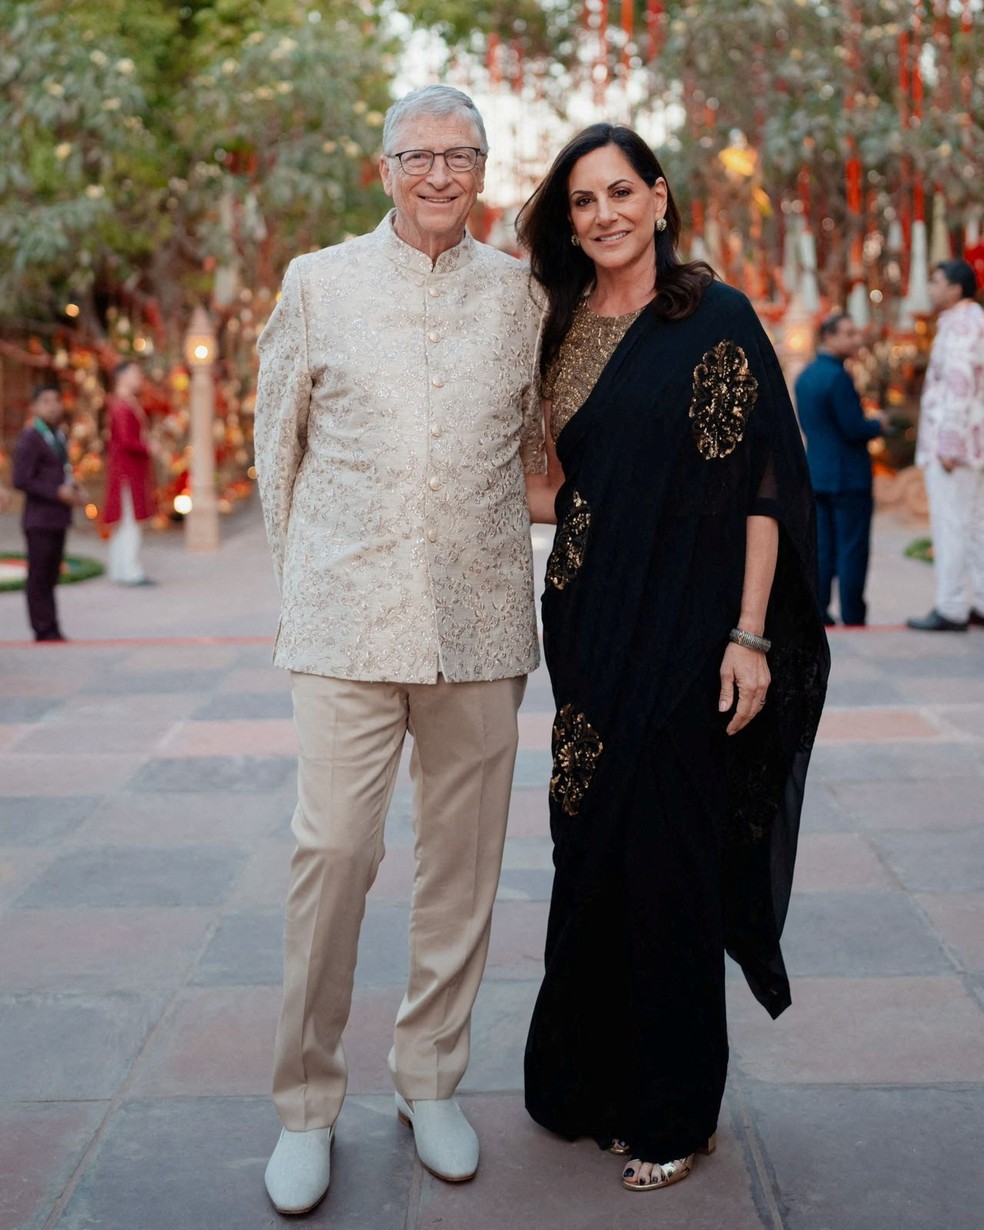 Bill Gates e Paula Hurd posam para foto durante as celebrações pré-casamento de Anant e Radhika Merchant, em Jamnagar, Gujarat, Índia — Foto: Reliance Industries/Handout via REUTERS